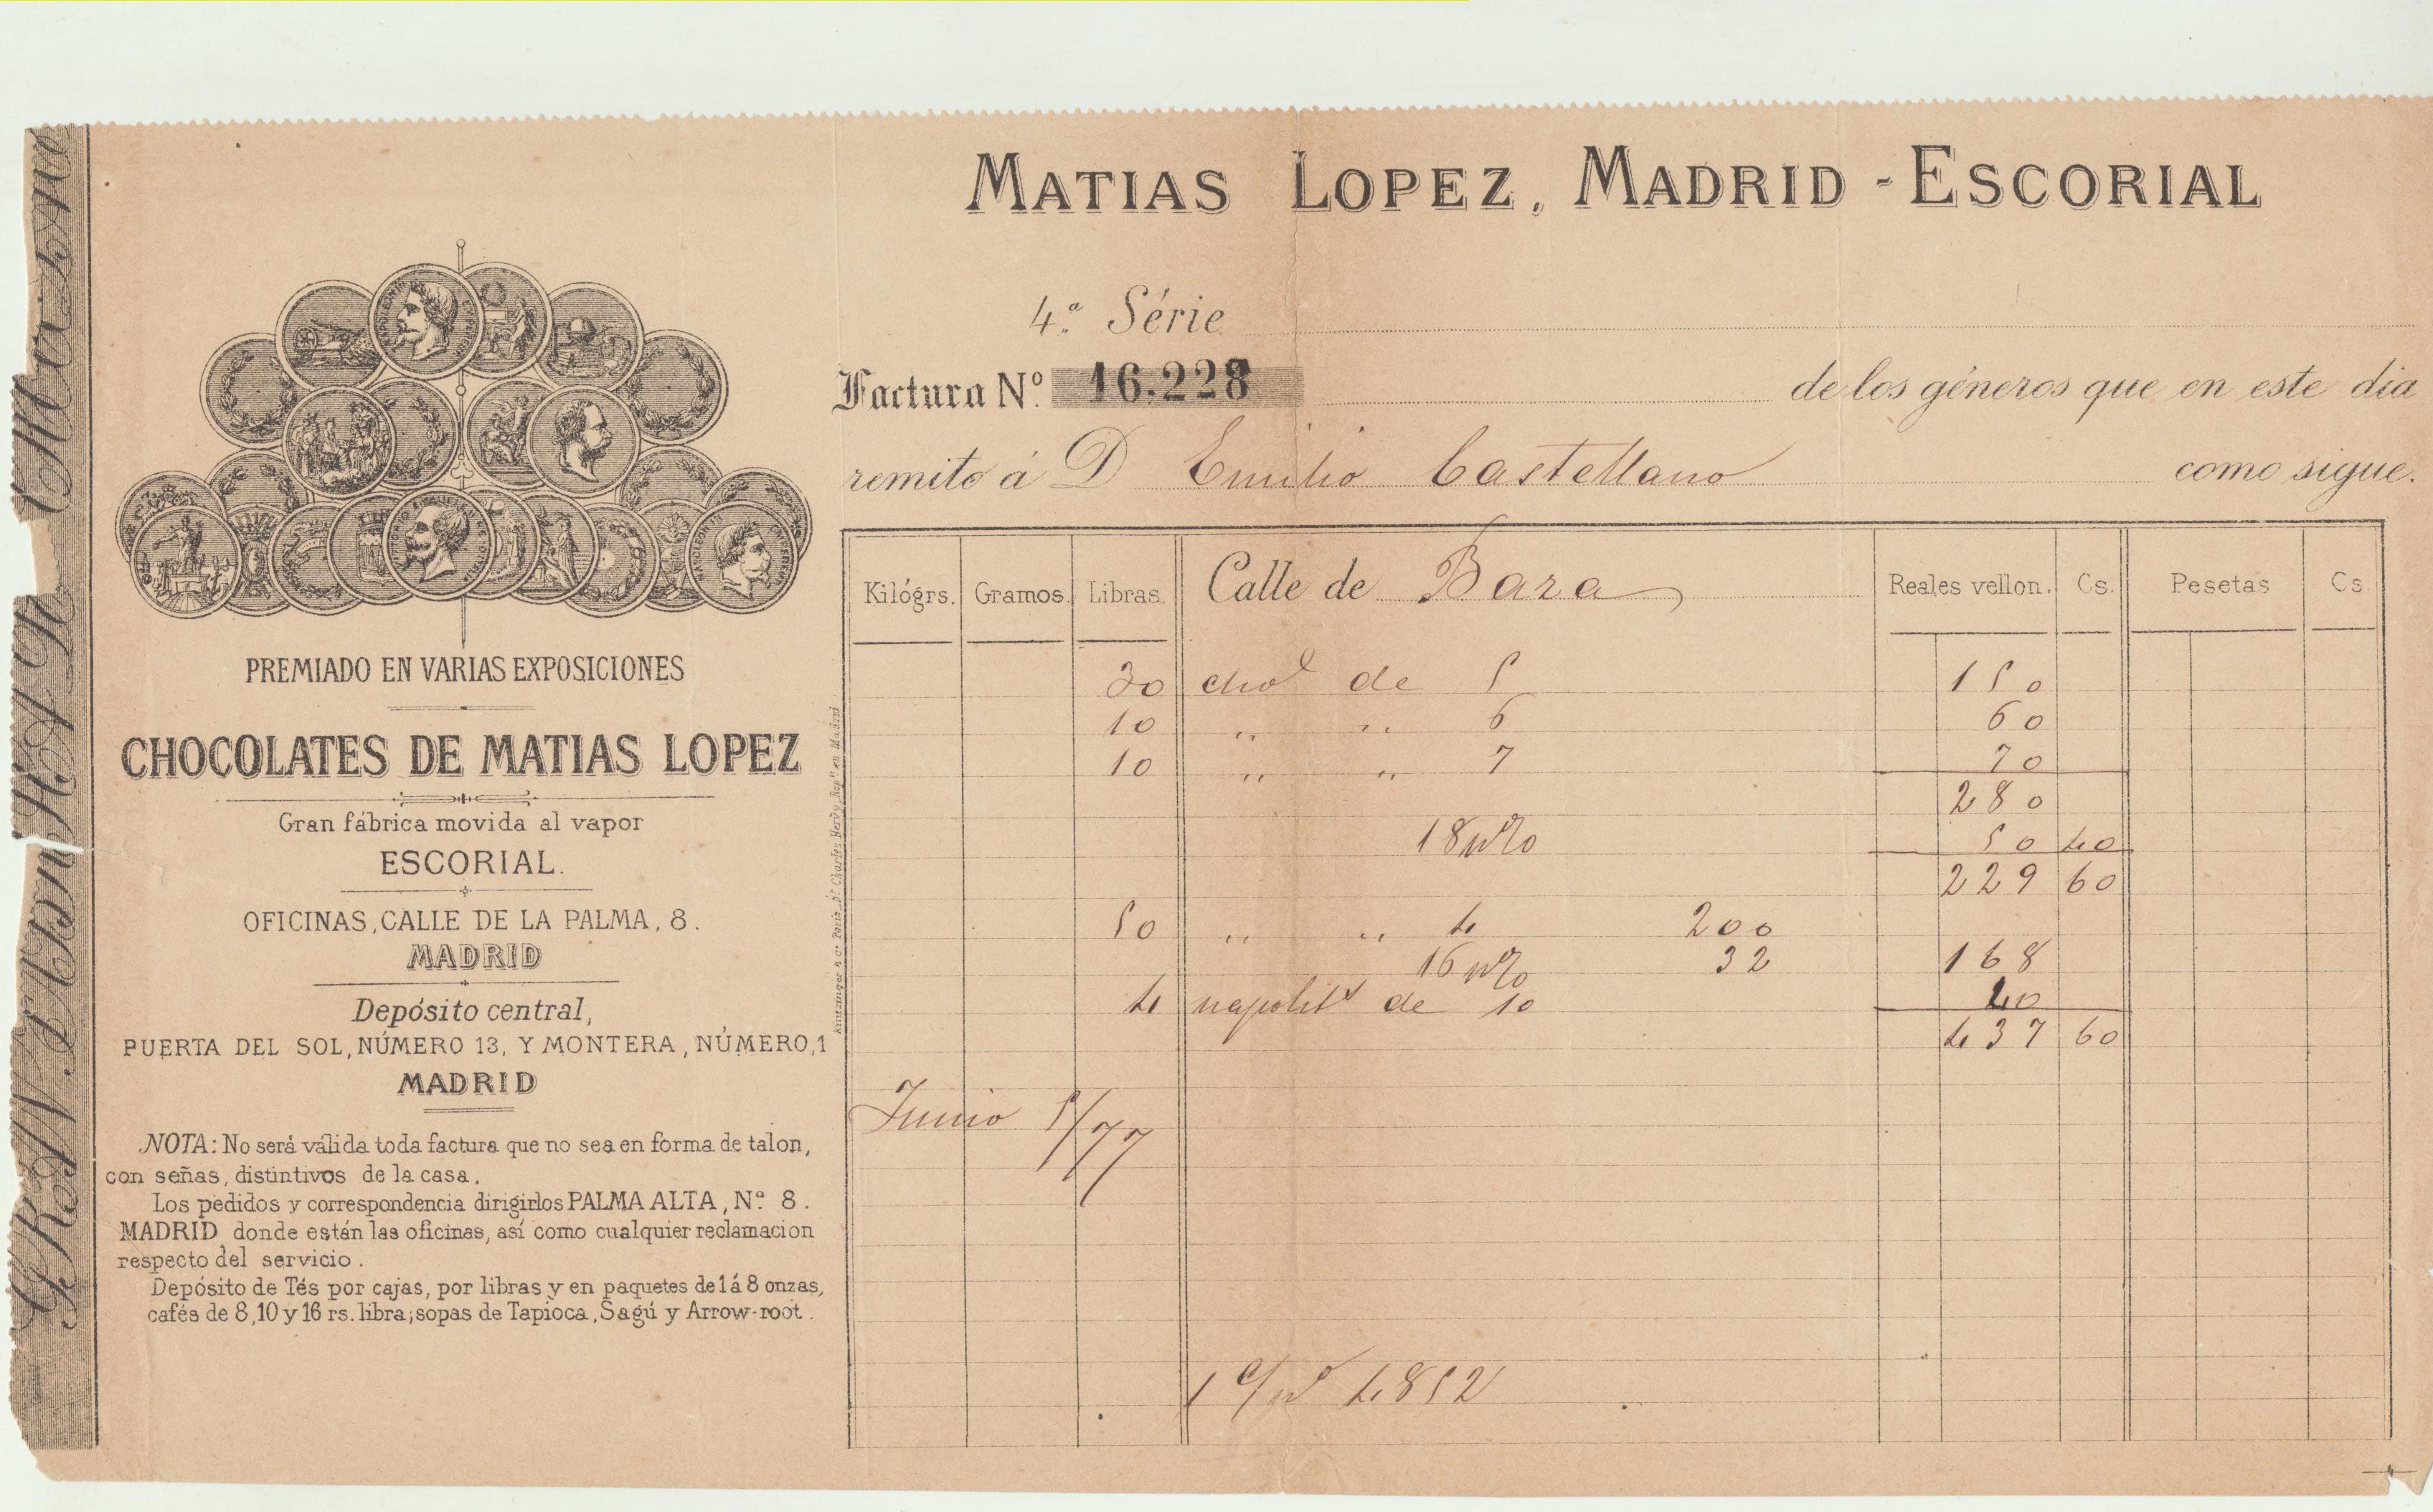 Chocolates Matías López. Madrid-Escorial. Factura a D. Emilio Castellano por 437 con 60. Reales de vellón. Madrid 1 de junio de 1877